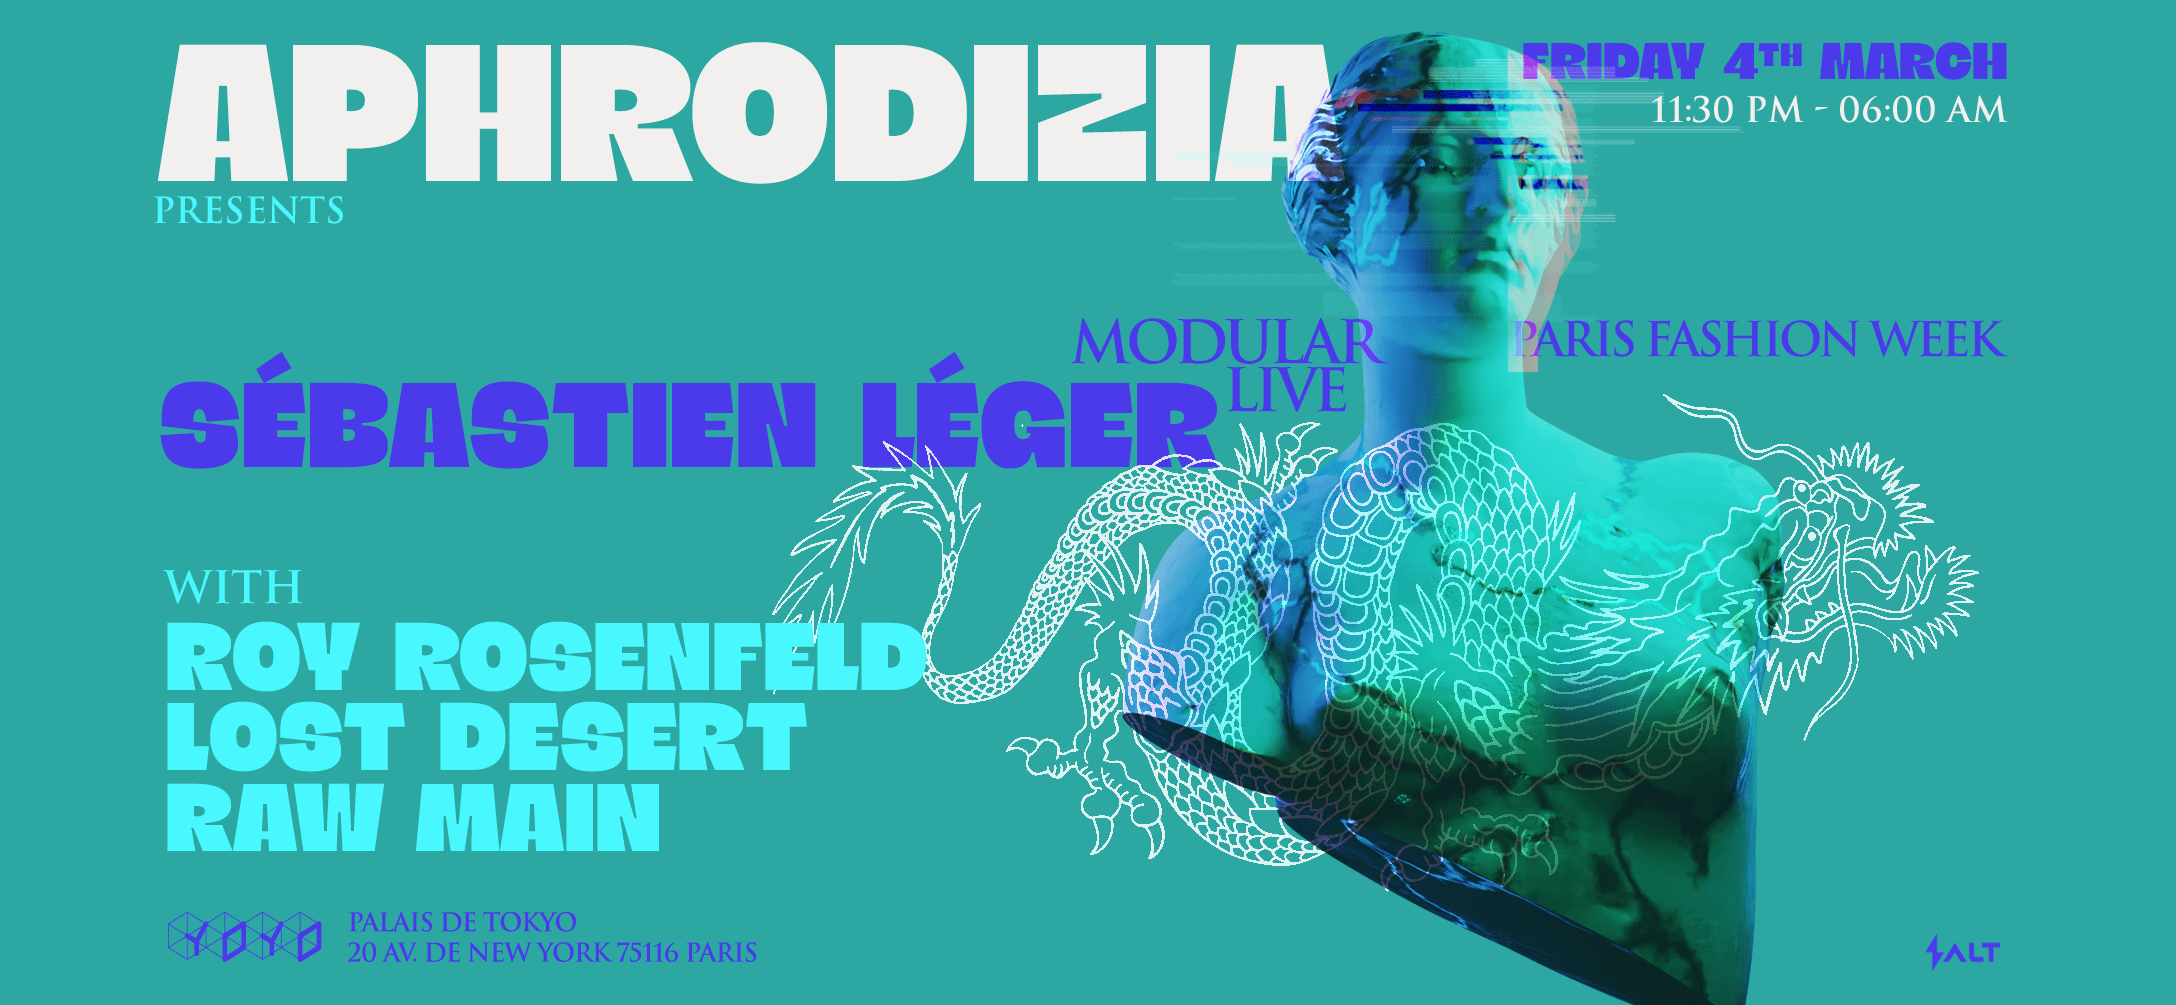 APHRODIZIA presents: Sébastien Léger (Modular Live), and more!